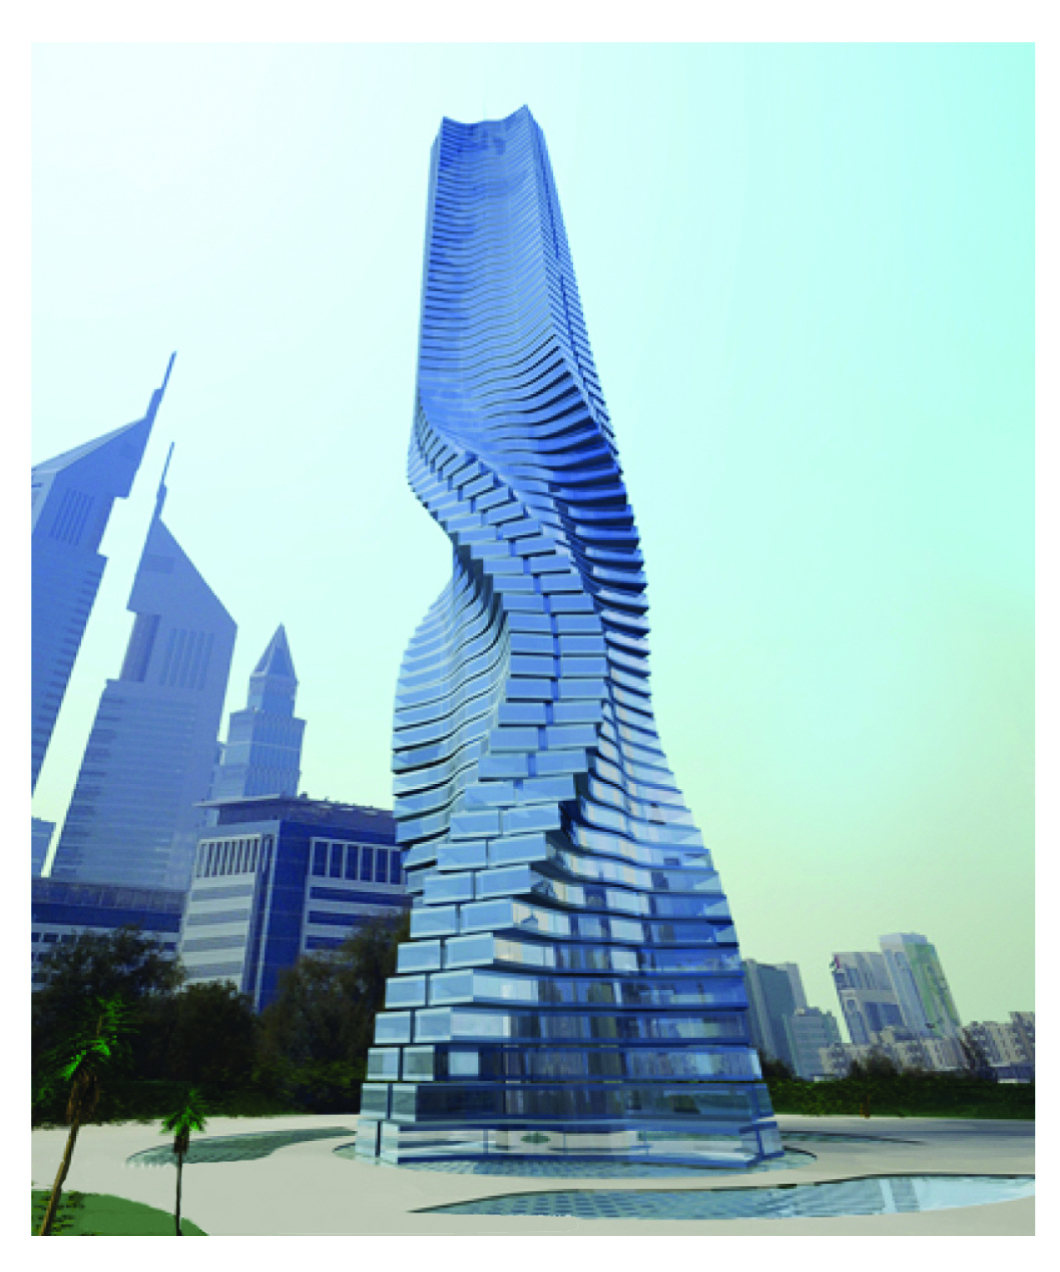 दा व्हींची टॉवर (२०१०) : दुबई येथील वातशक्तिचलित गोल फिरणारी गगनचुंबी इमारत (यामधील प्रत्येक मजला स्वतंत्र रीत्या फिरू शकतो उंची ४२० मी. ८० मजले).